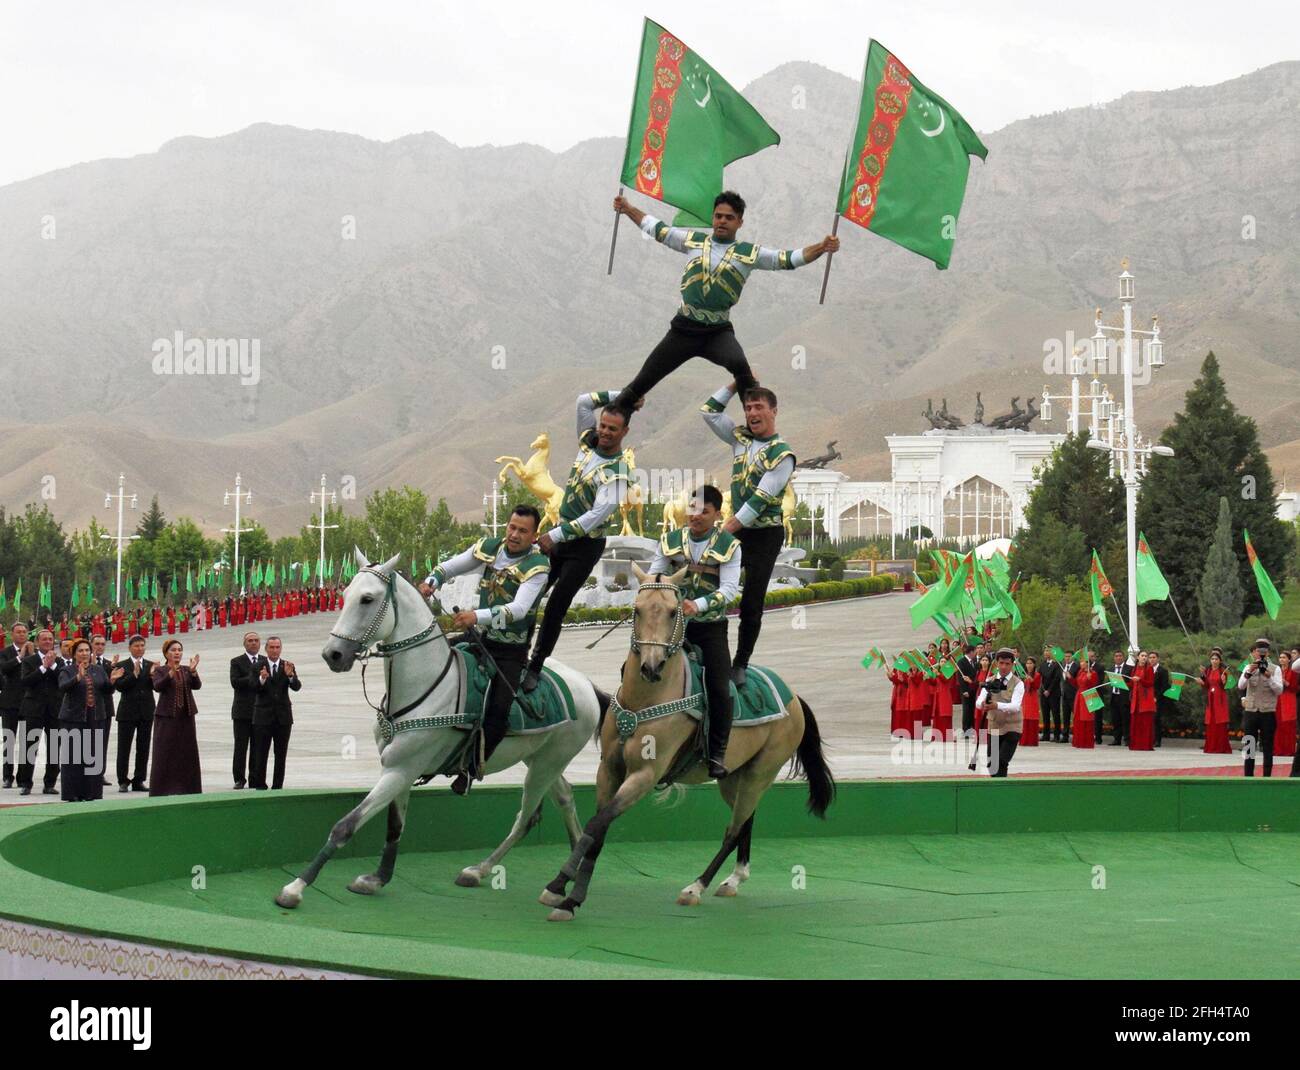 Reiter treten während der Feierlichkeiten zum nationalen turkmenischen Pferdetag und zum turkmenischen Schäferhundentag in der Nähe von Aschgabat, Turkmenistan, am 25. April 2021 auf. REUTERS/Vyacheslav Sarkisyan Stockfoto